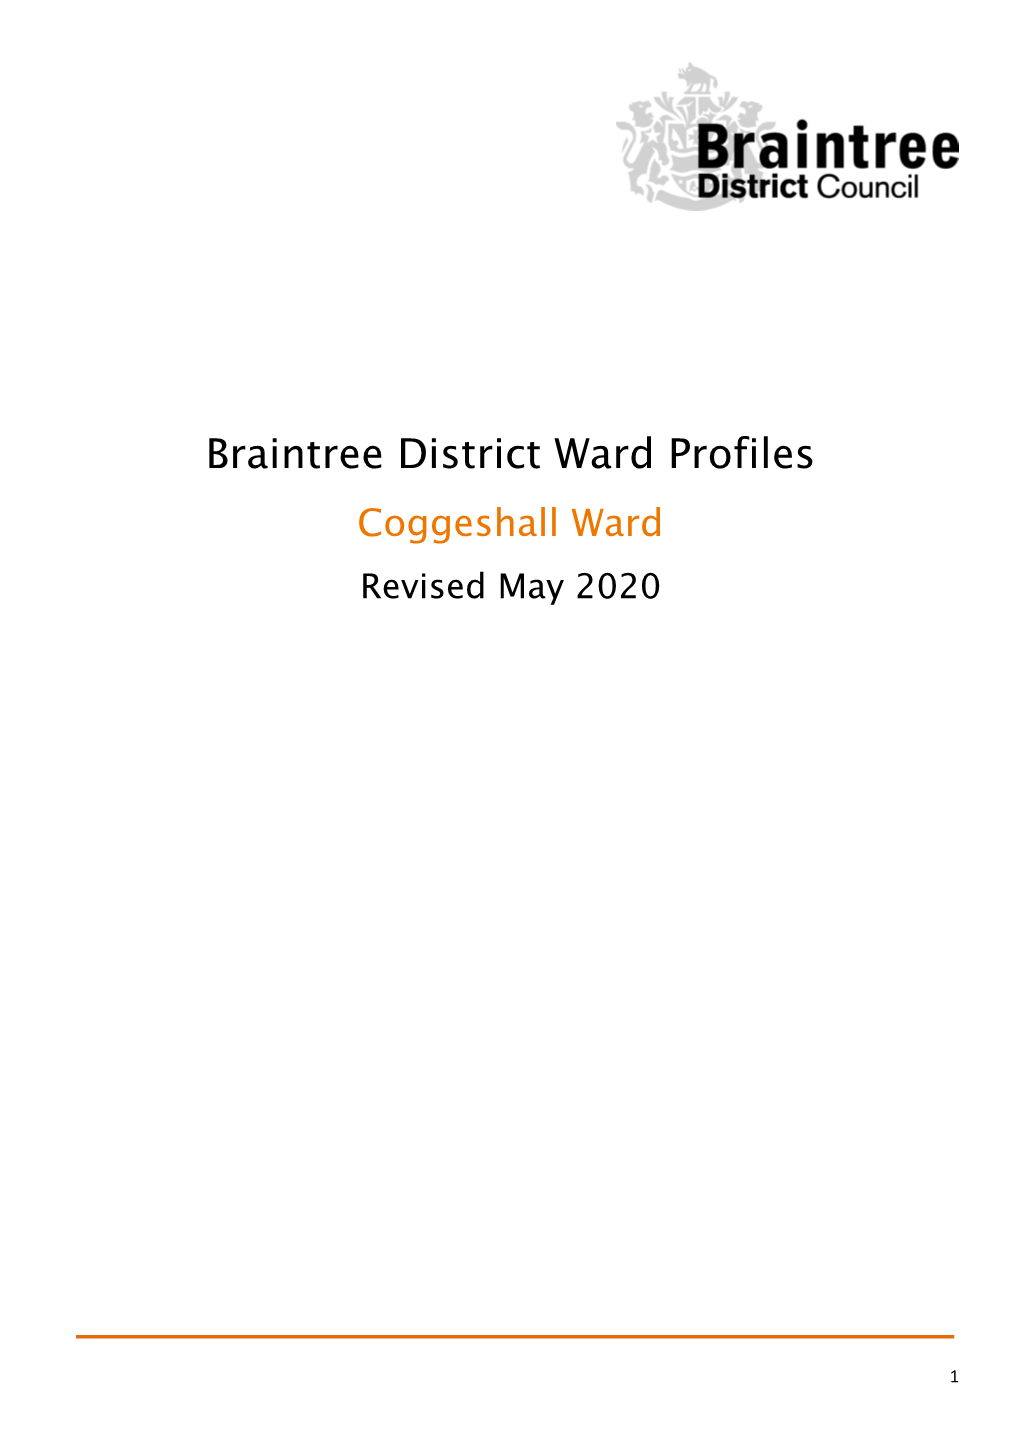 Coggeshall Ward Revised May 2020